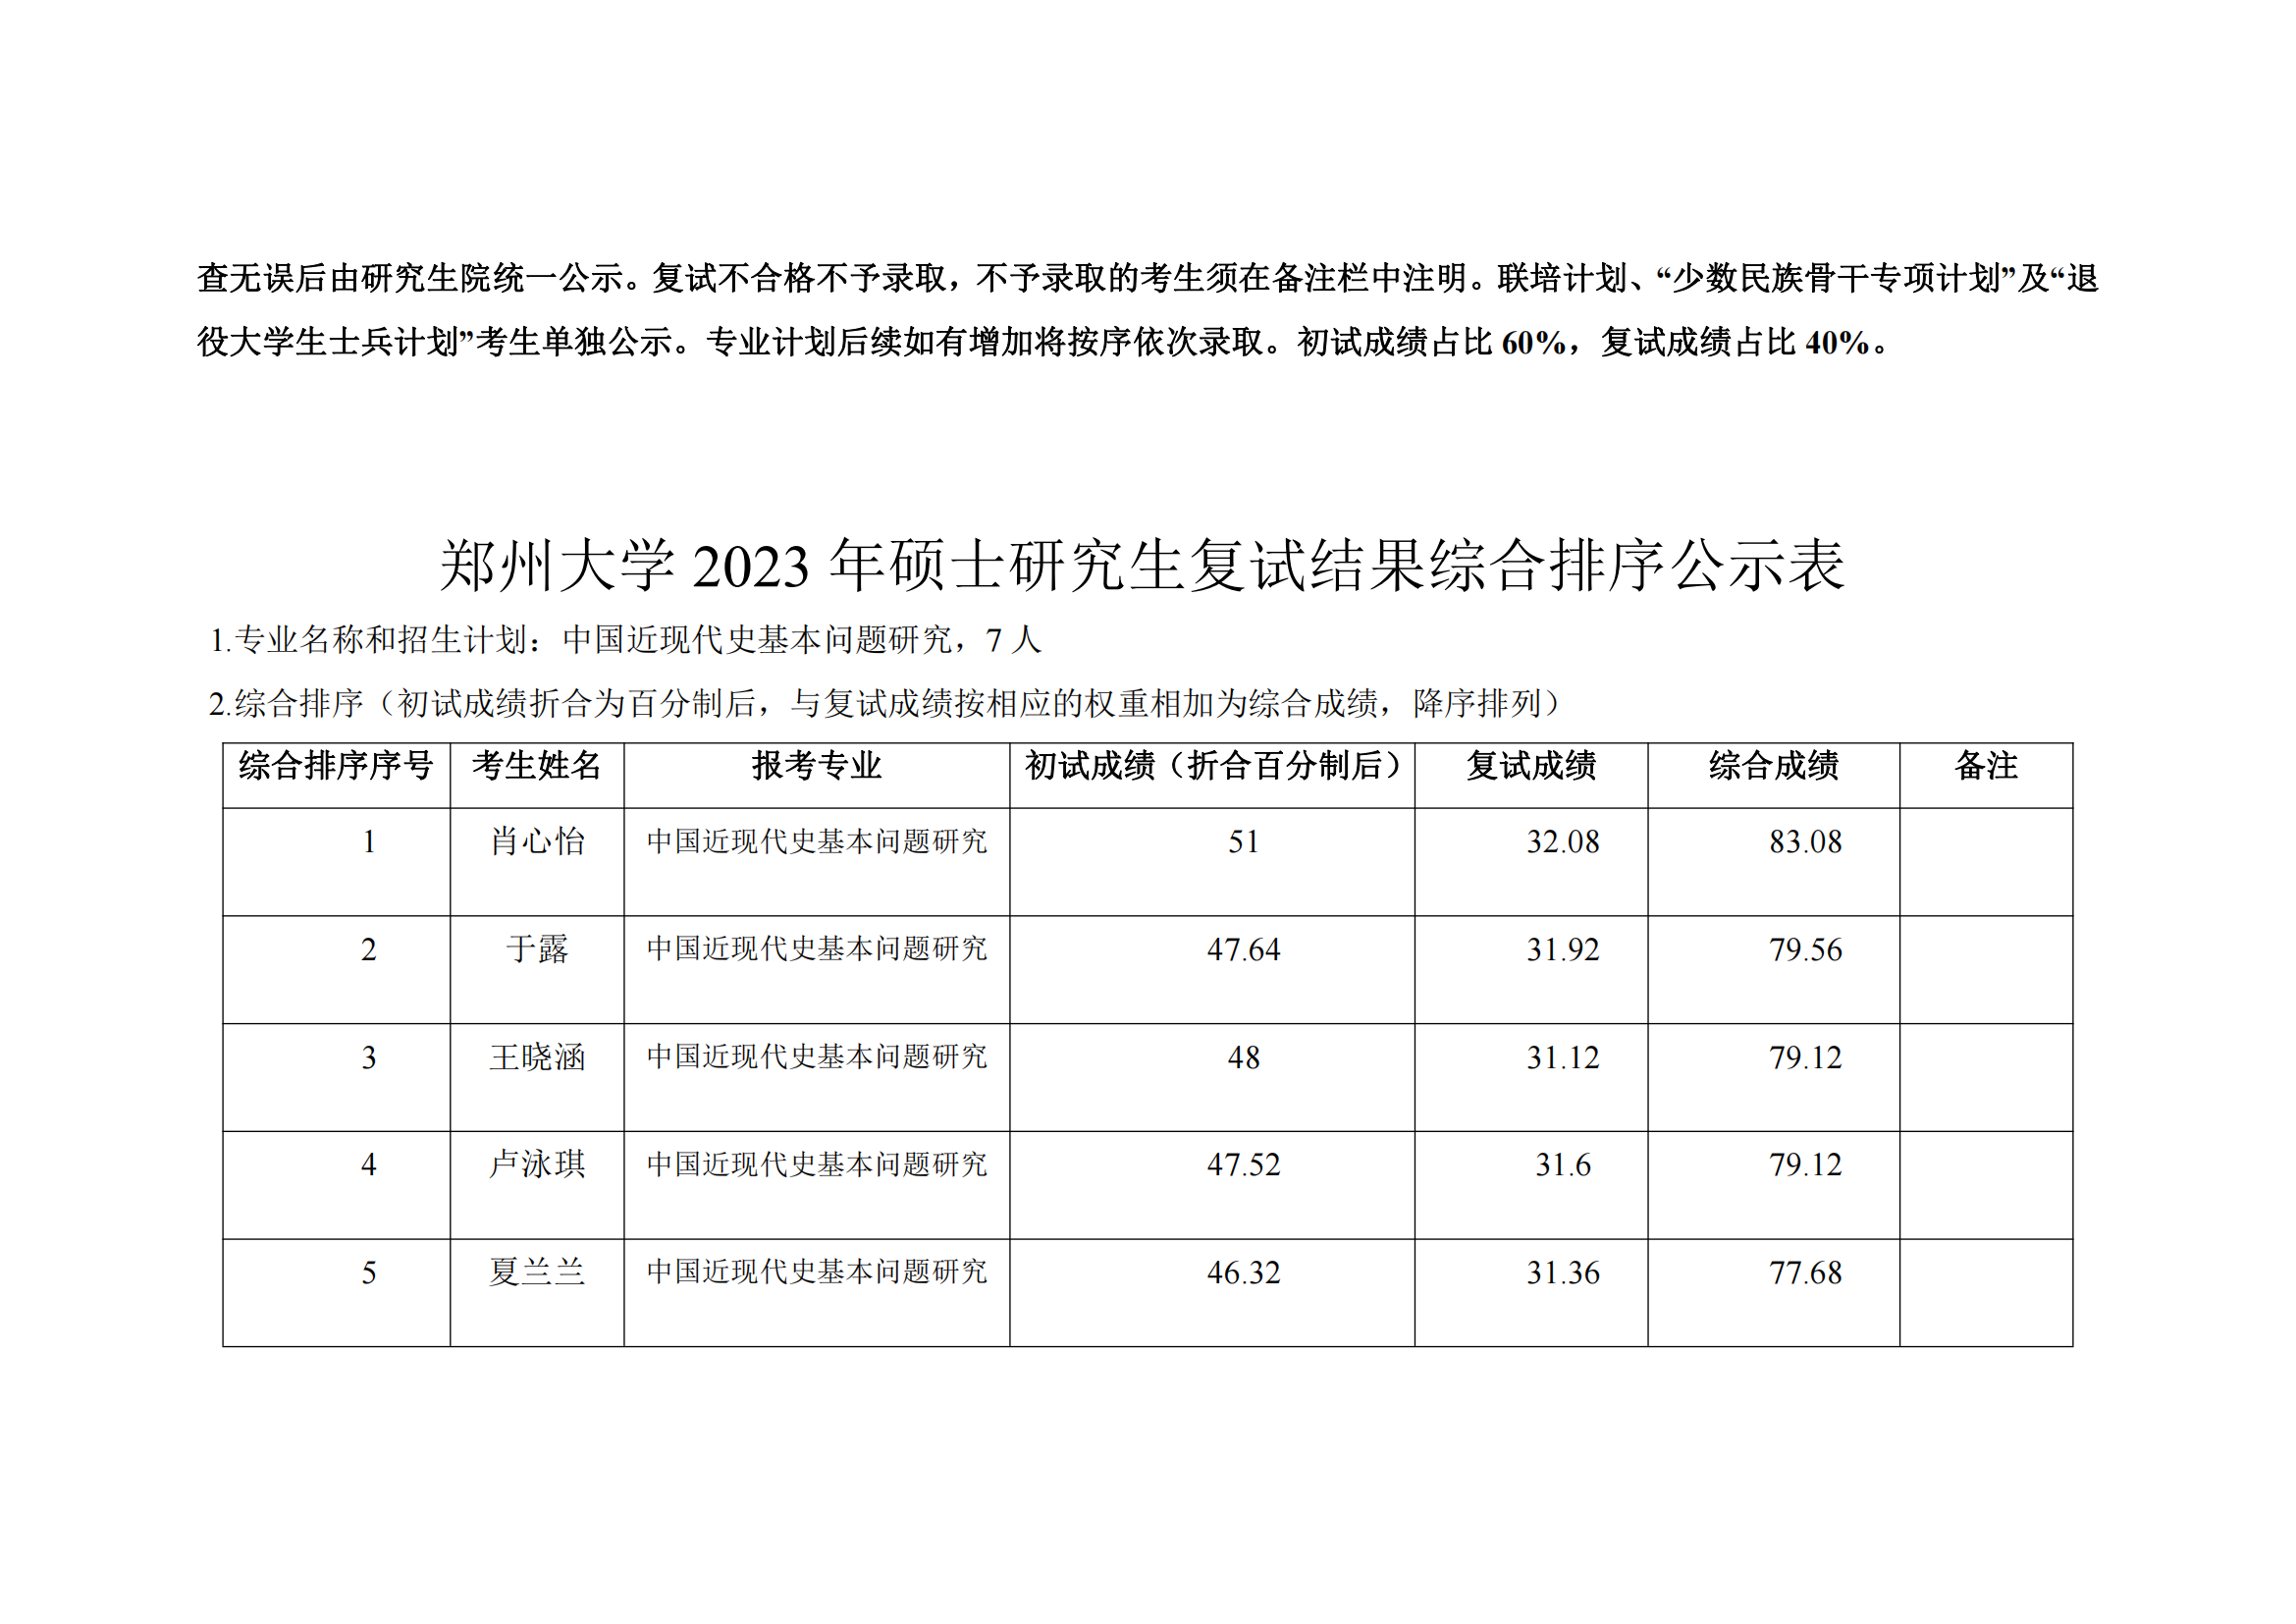 郑州大学马克思主义学院2023年硕士研究生复试结果综合排序公示表_14.png